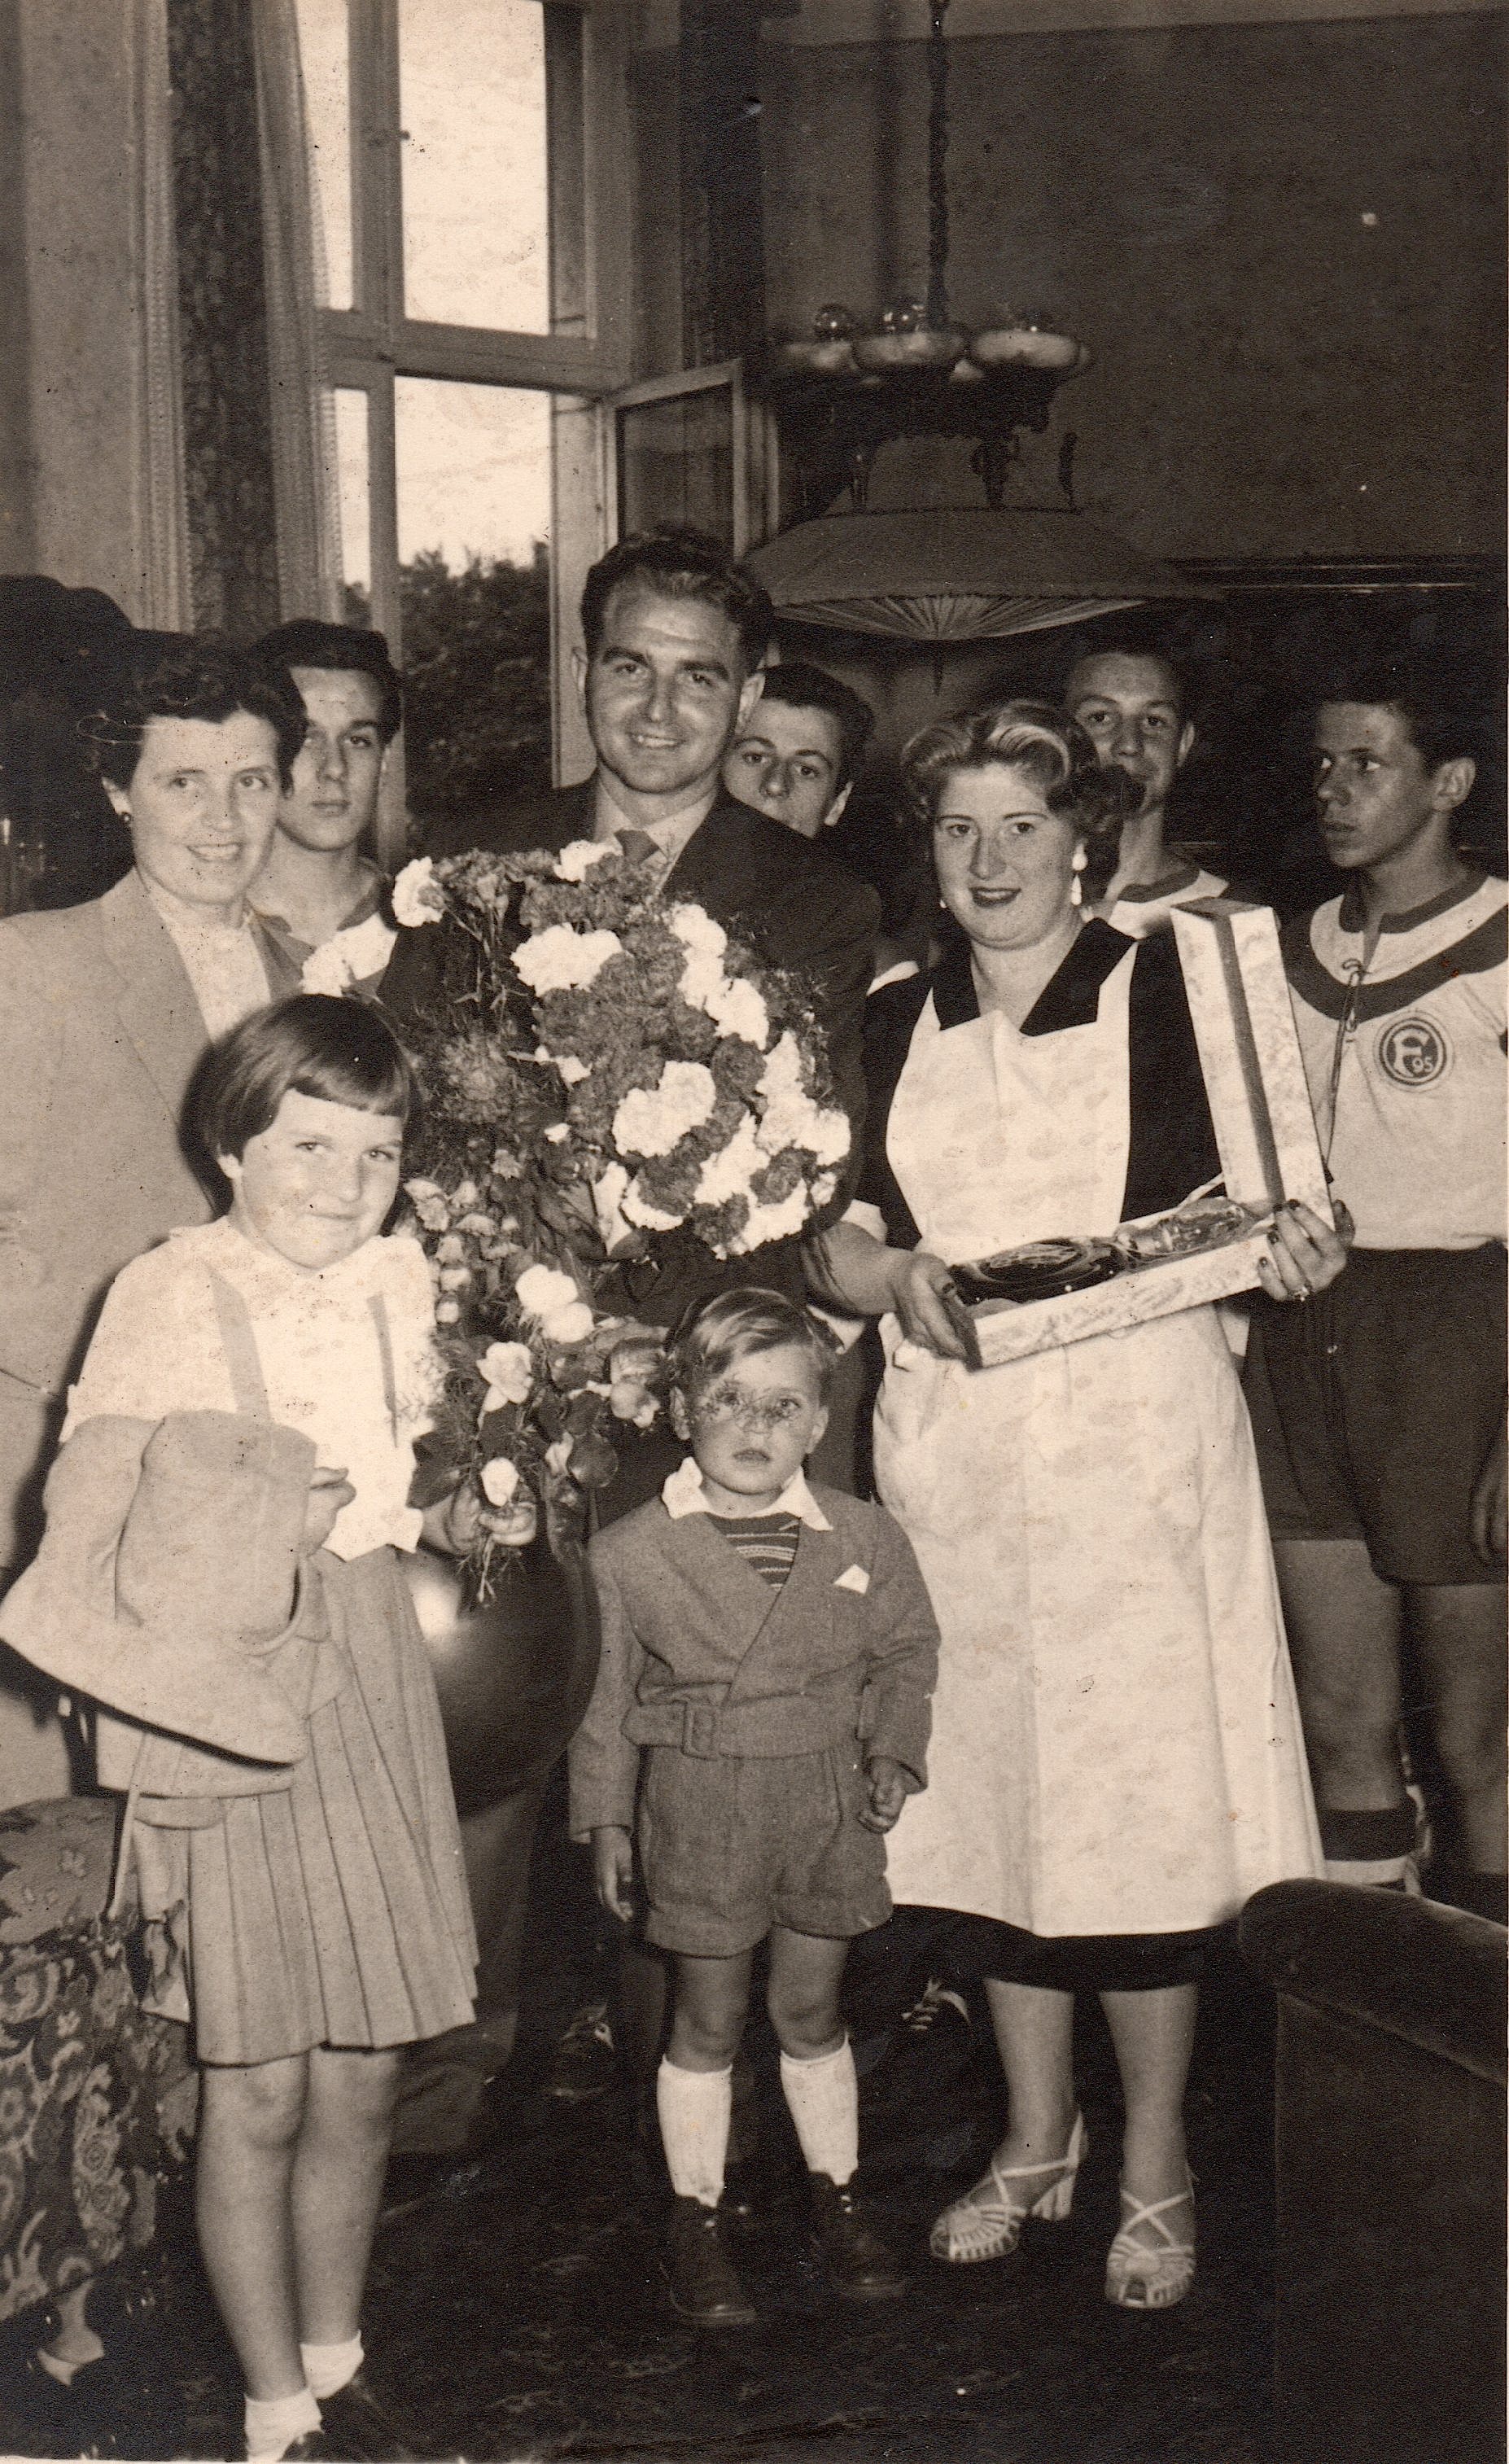 17 – Turek mit seiner Gattin (links) und den beiden Kindern 
(1954 bei der WM-Feier im Hoffelder Hof in Düsseldorf) 

